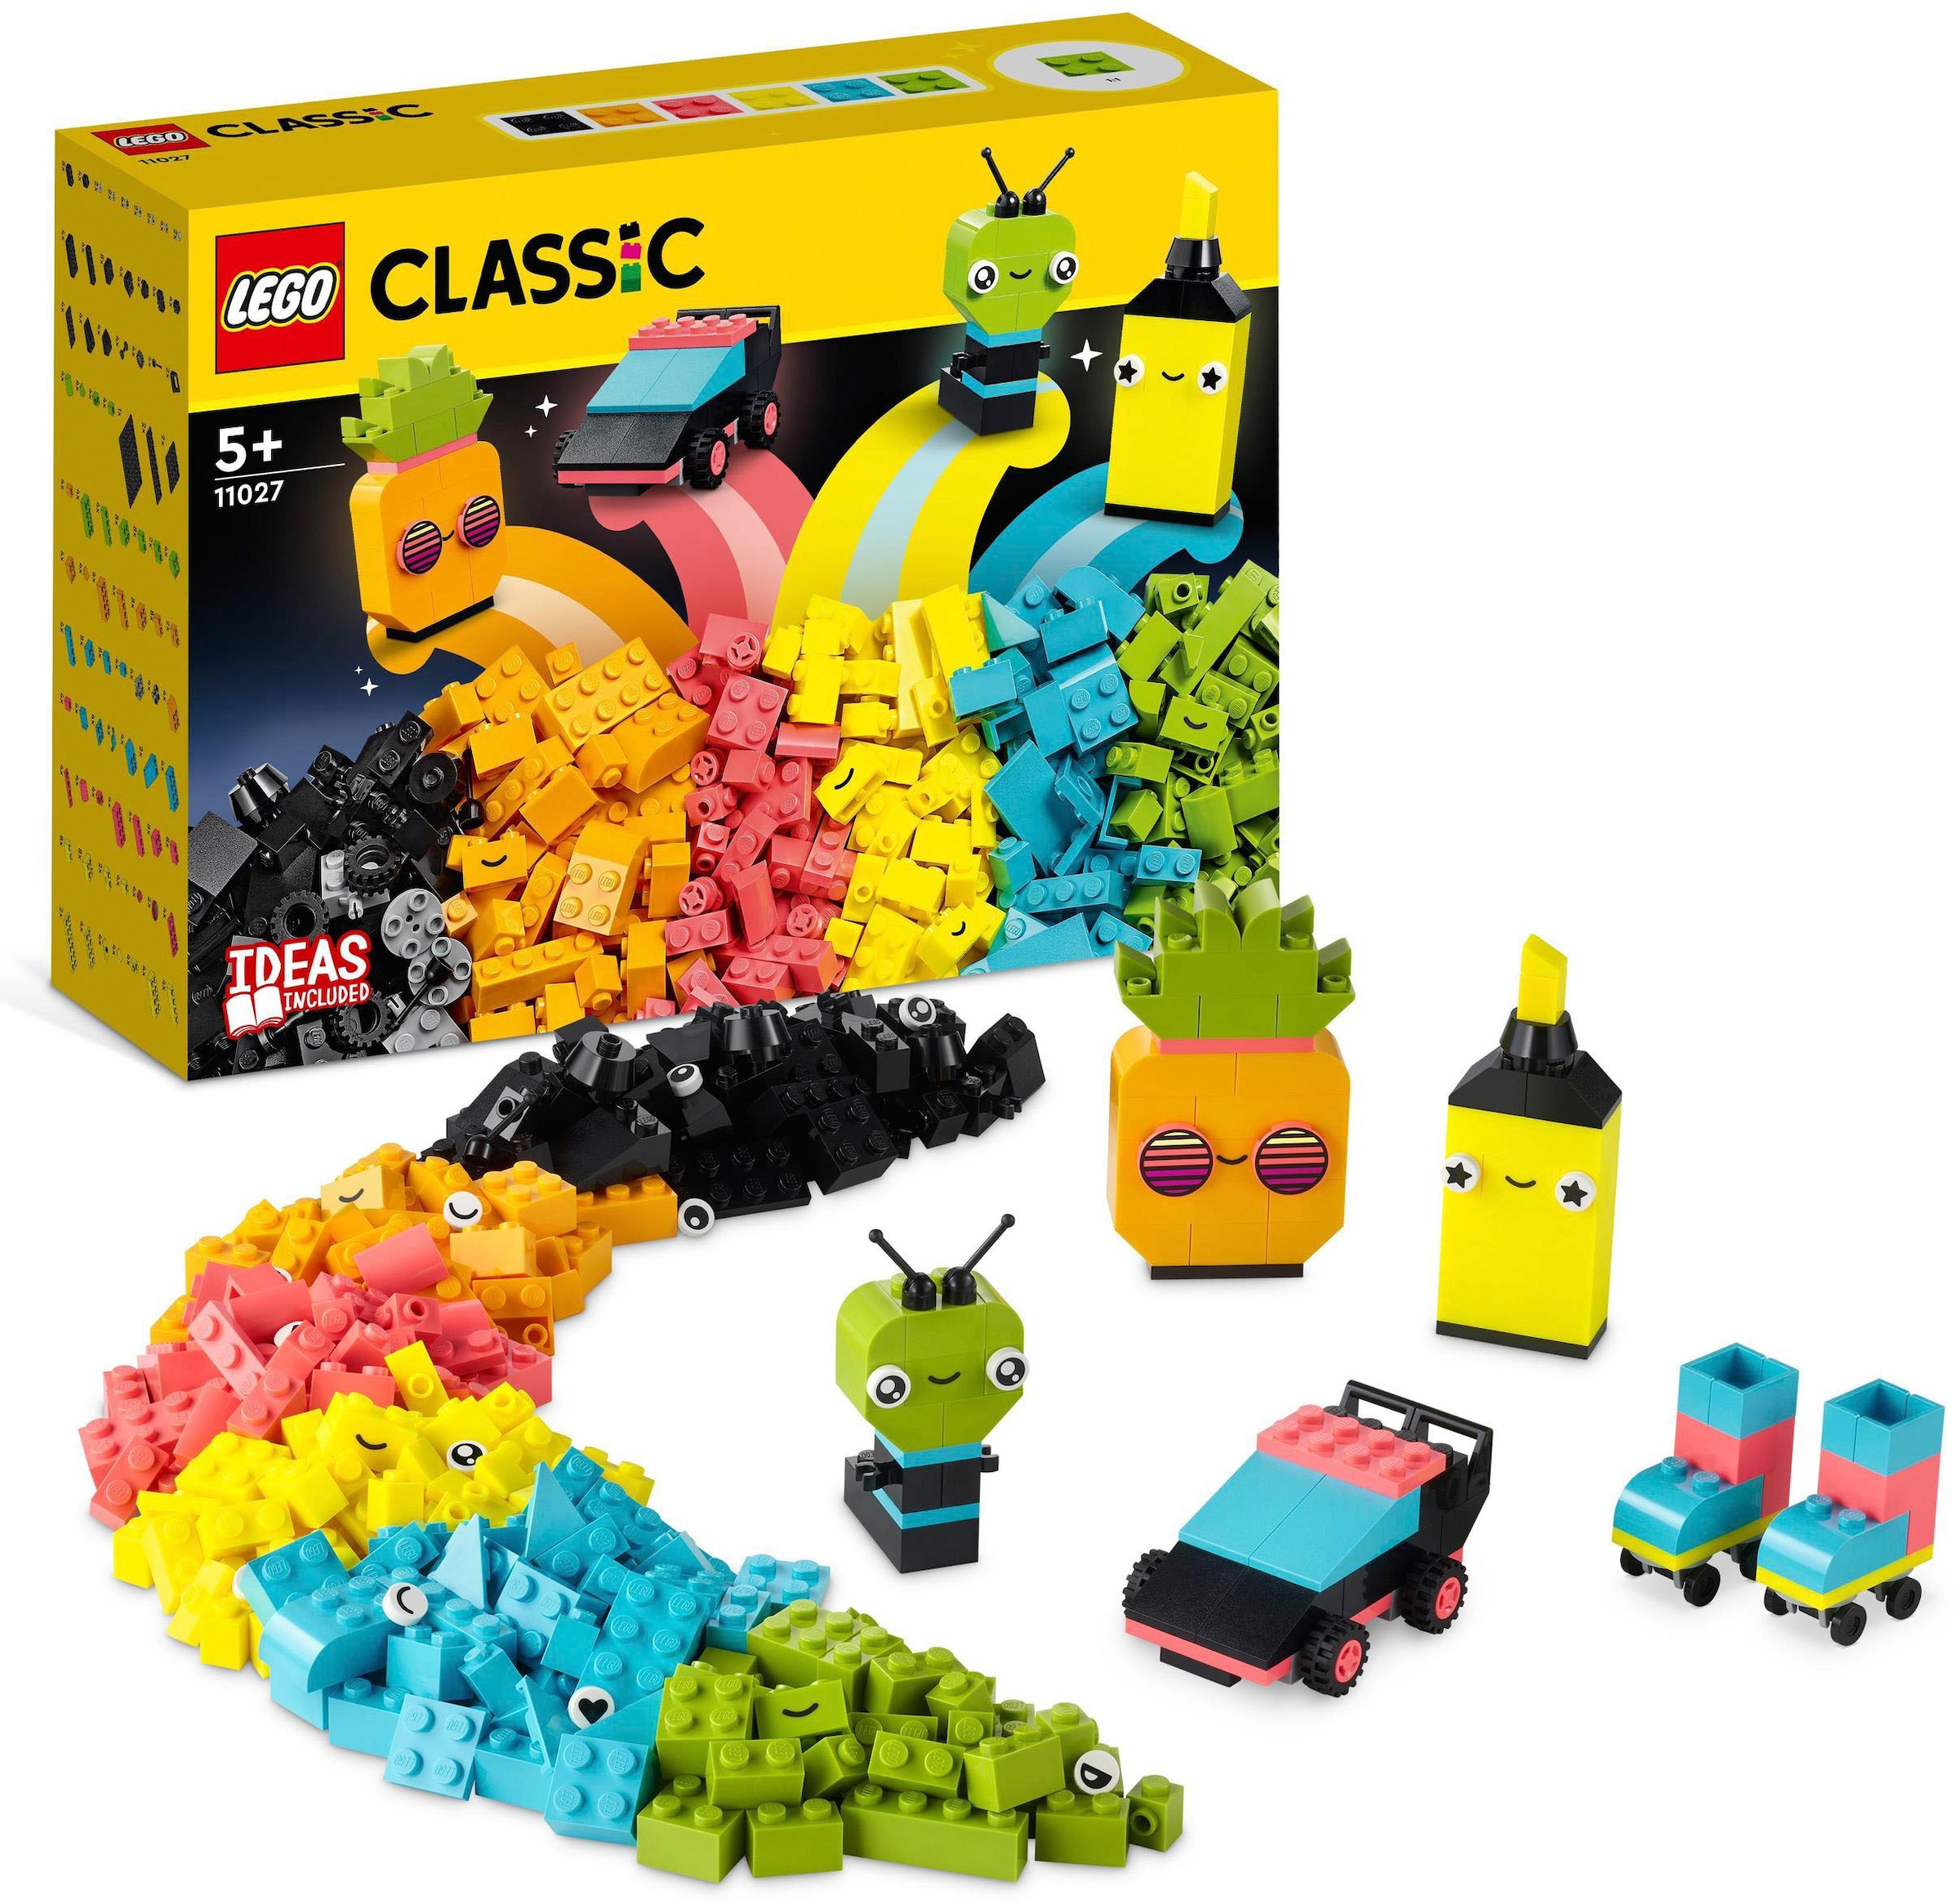 Konstruktionsspielsteine »Neon Kreativ-Bauset (11027), LEGO® Classic«, (333 St.)